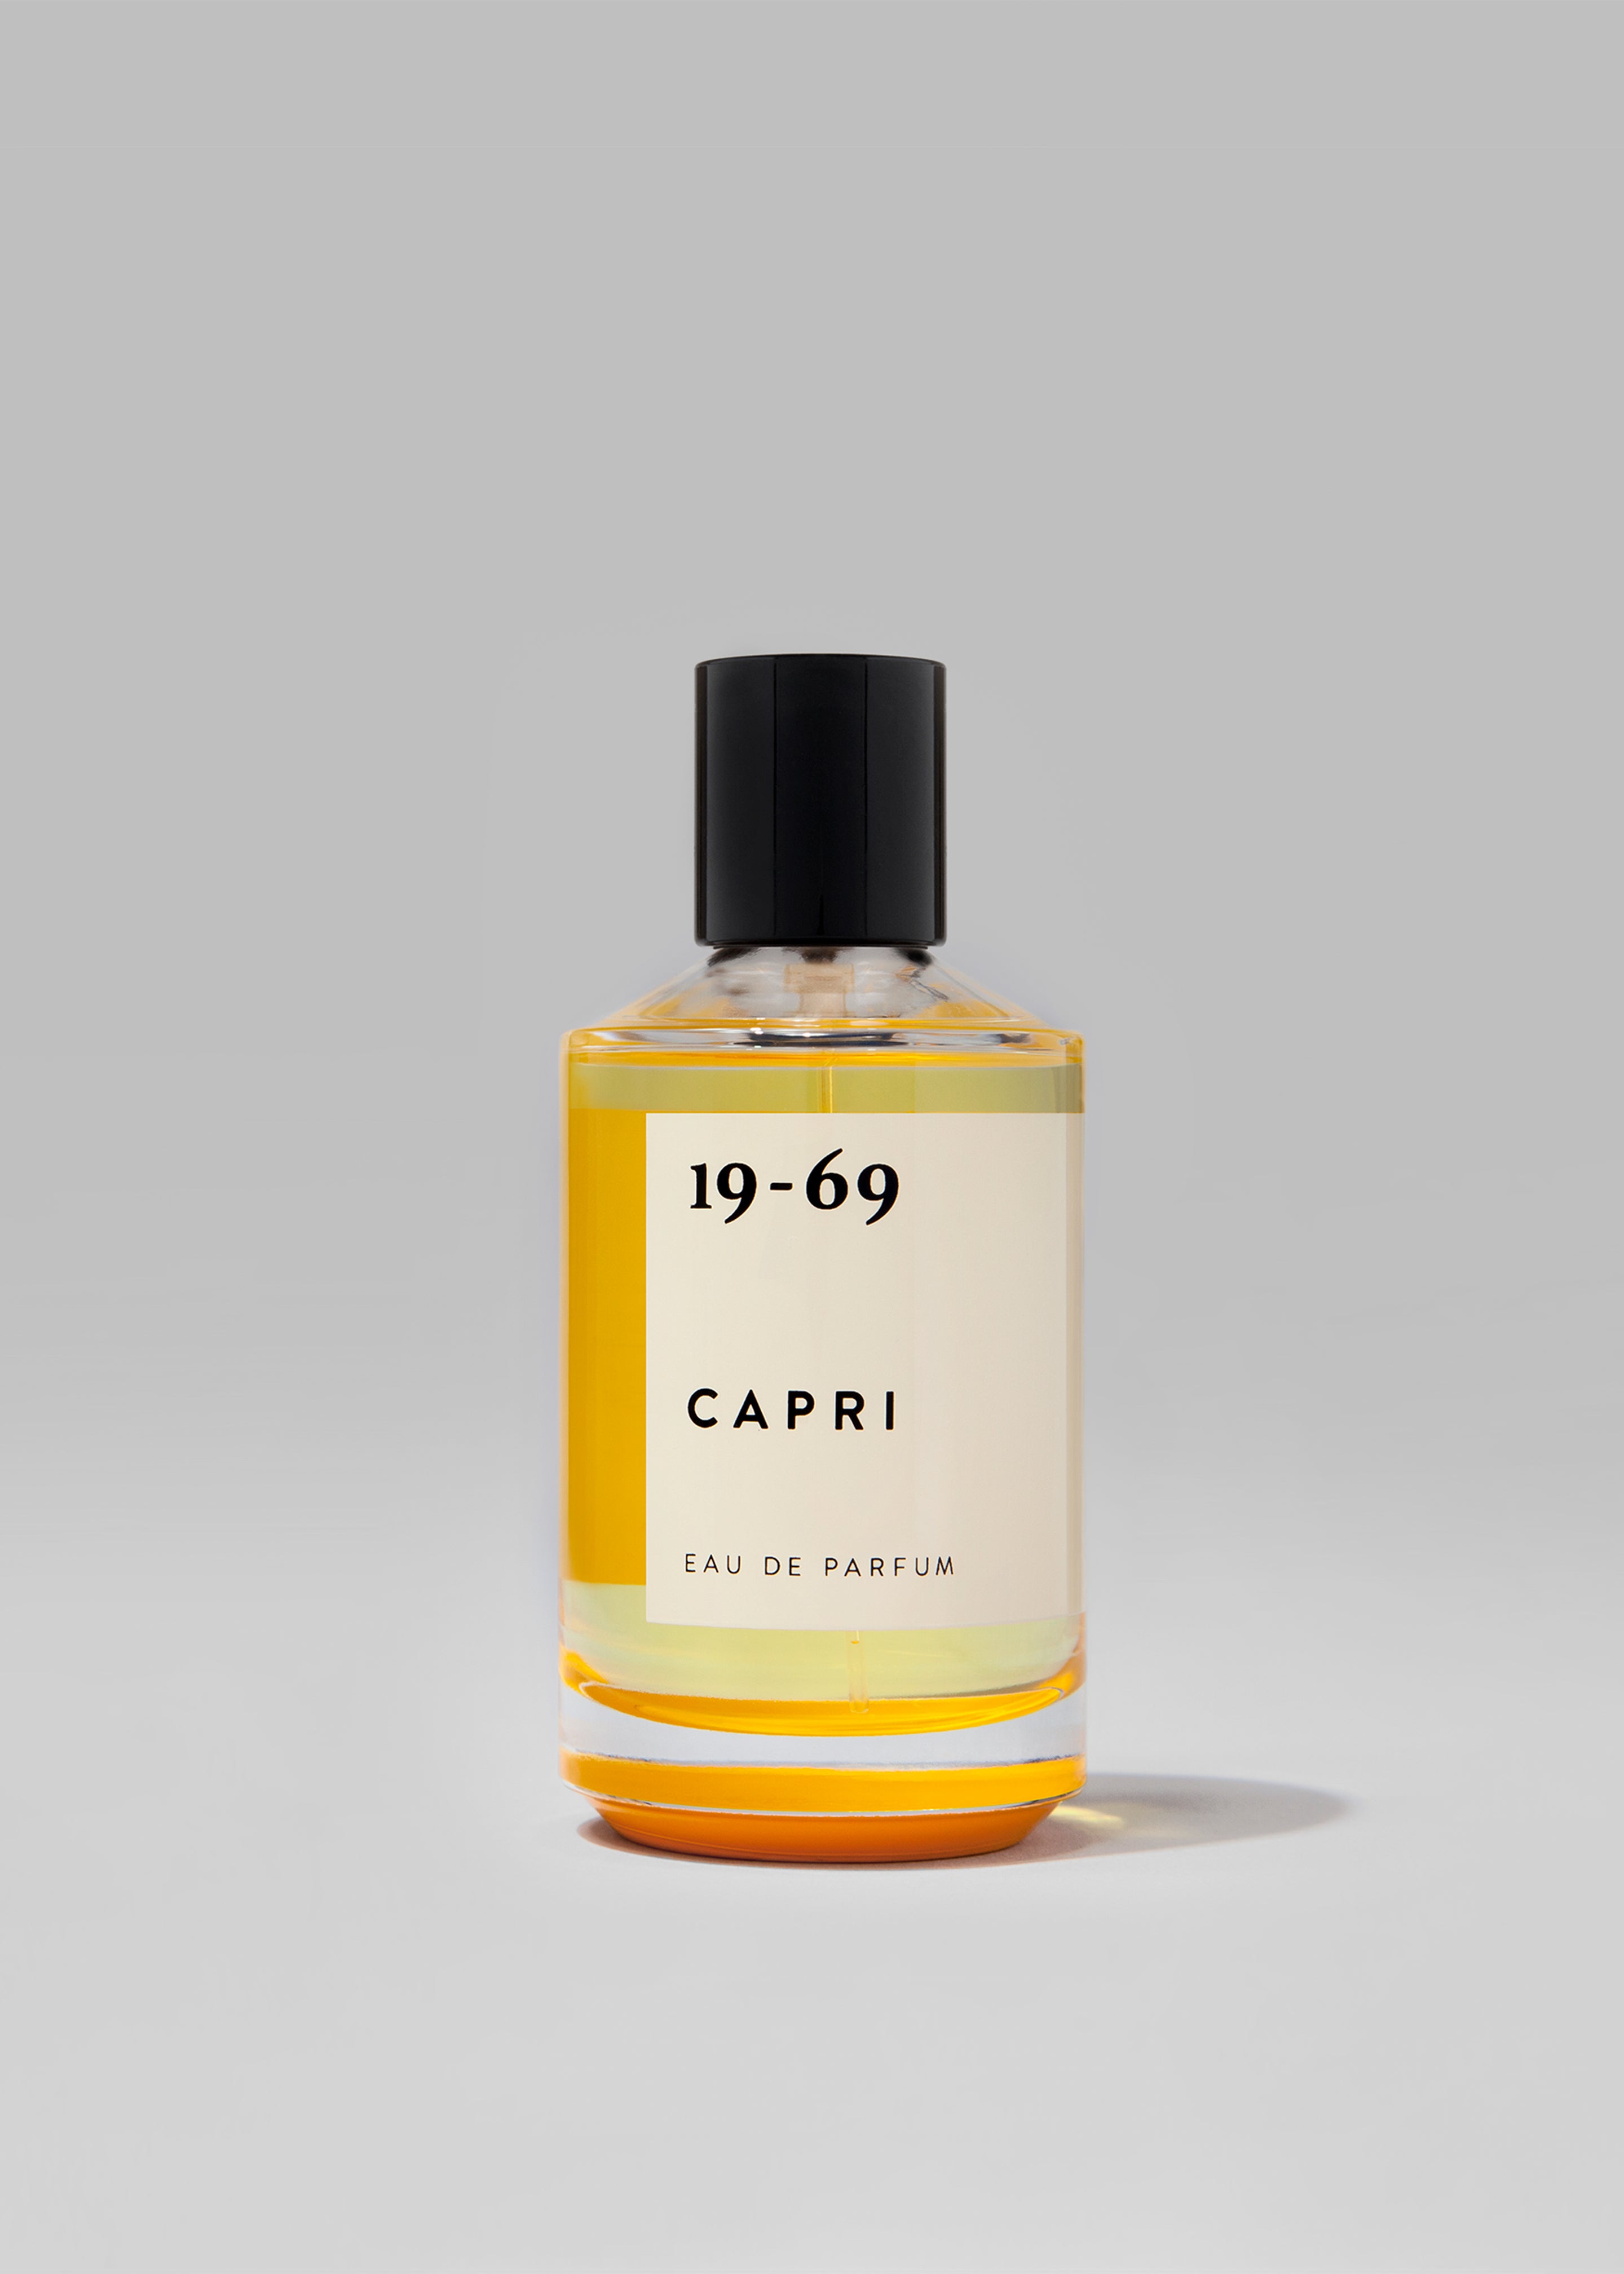 19-69 Capri Eau de Parfum - 1